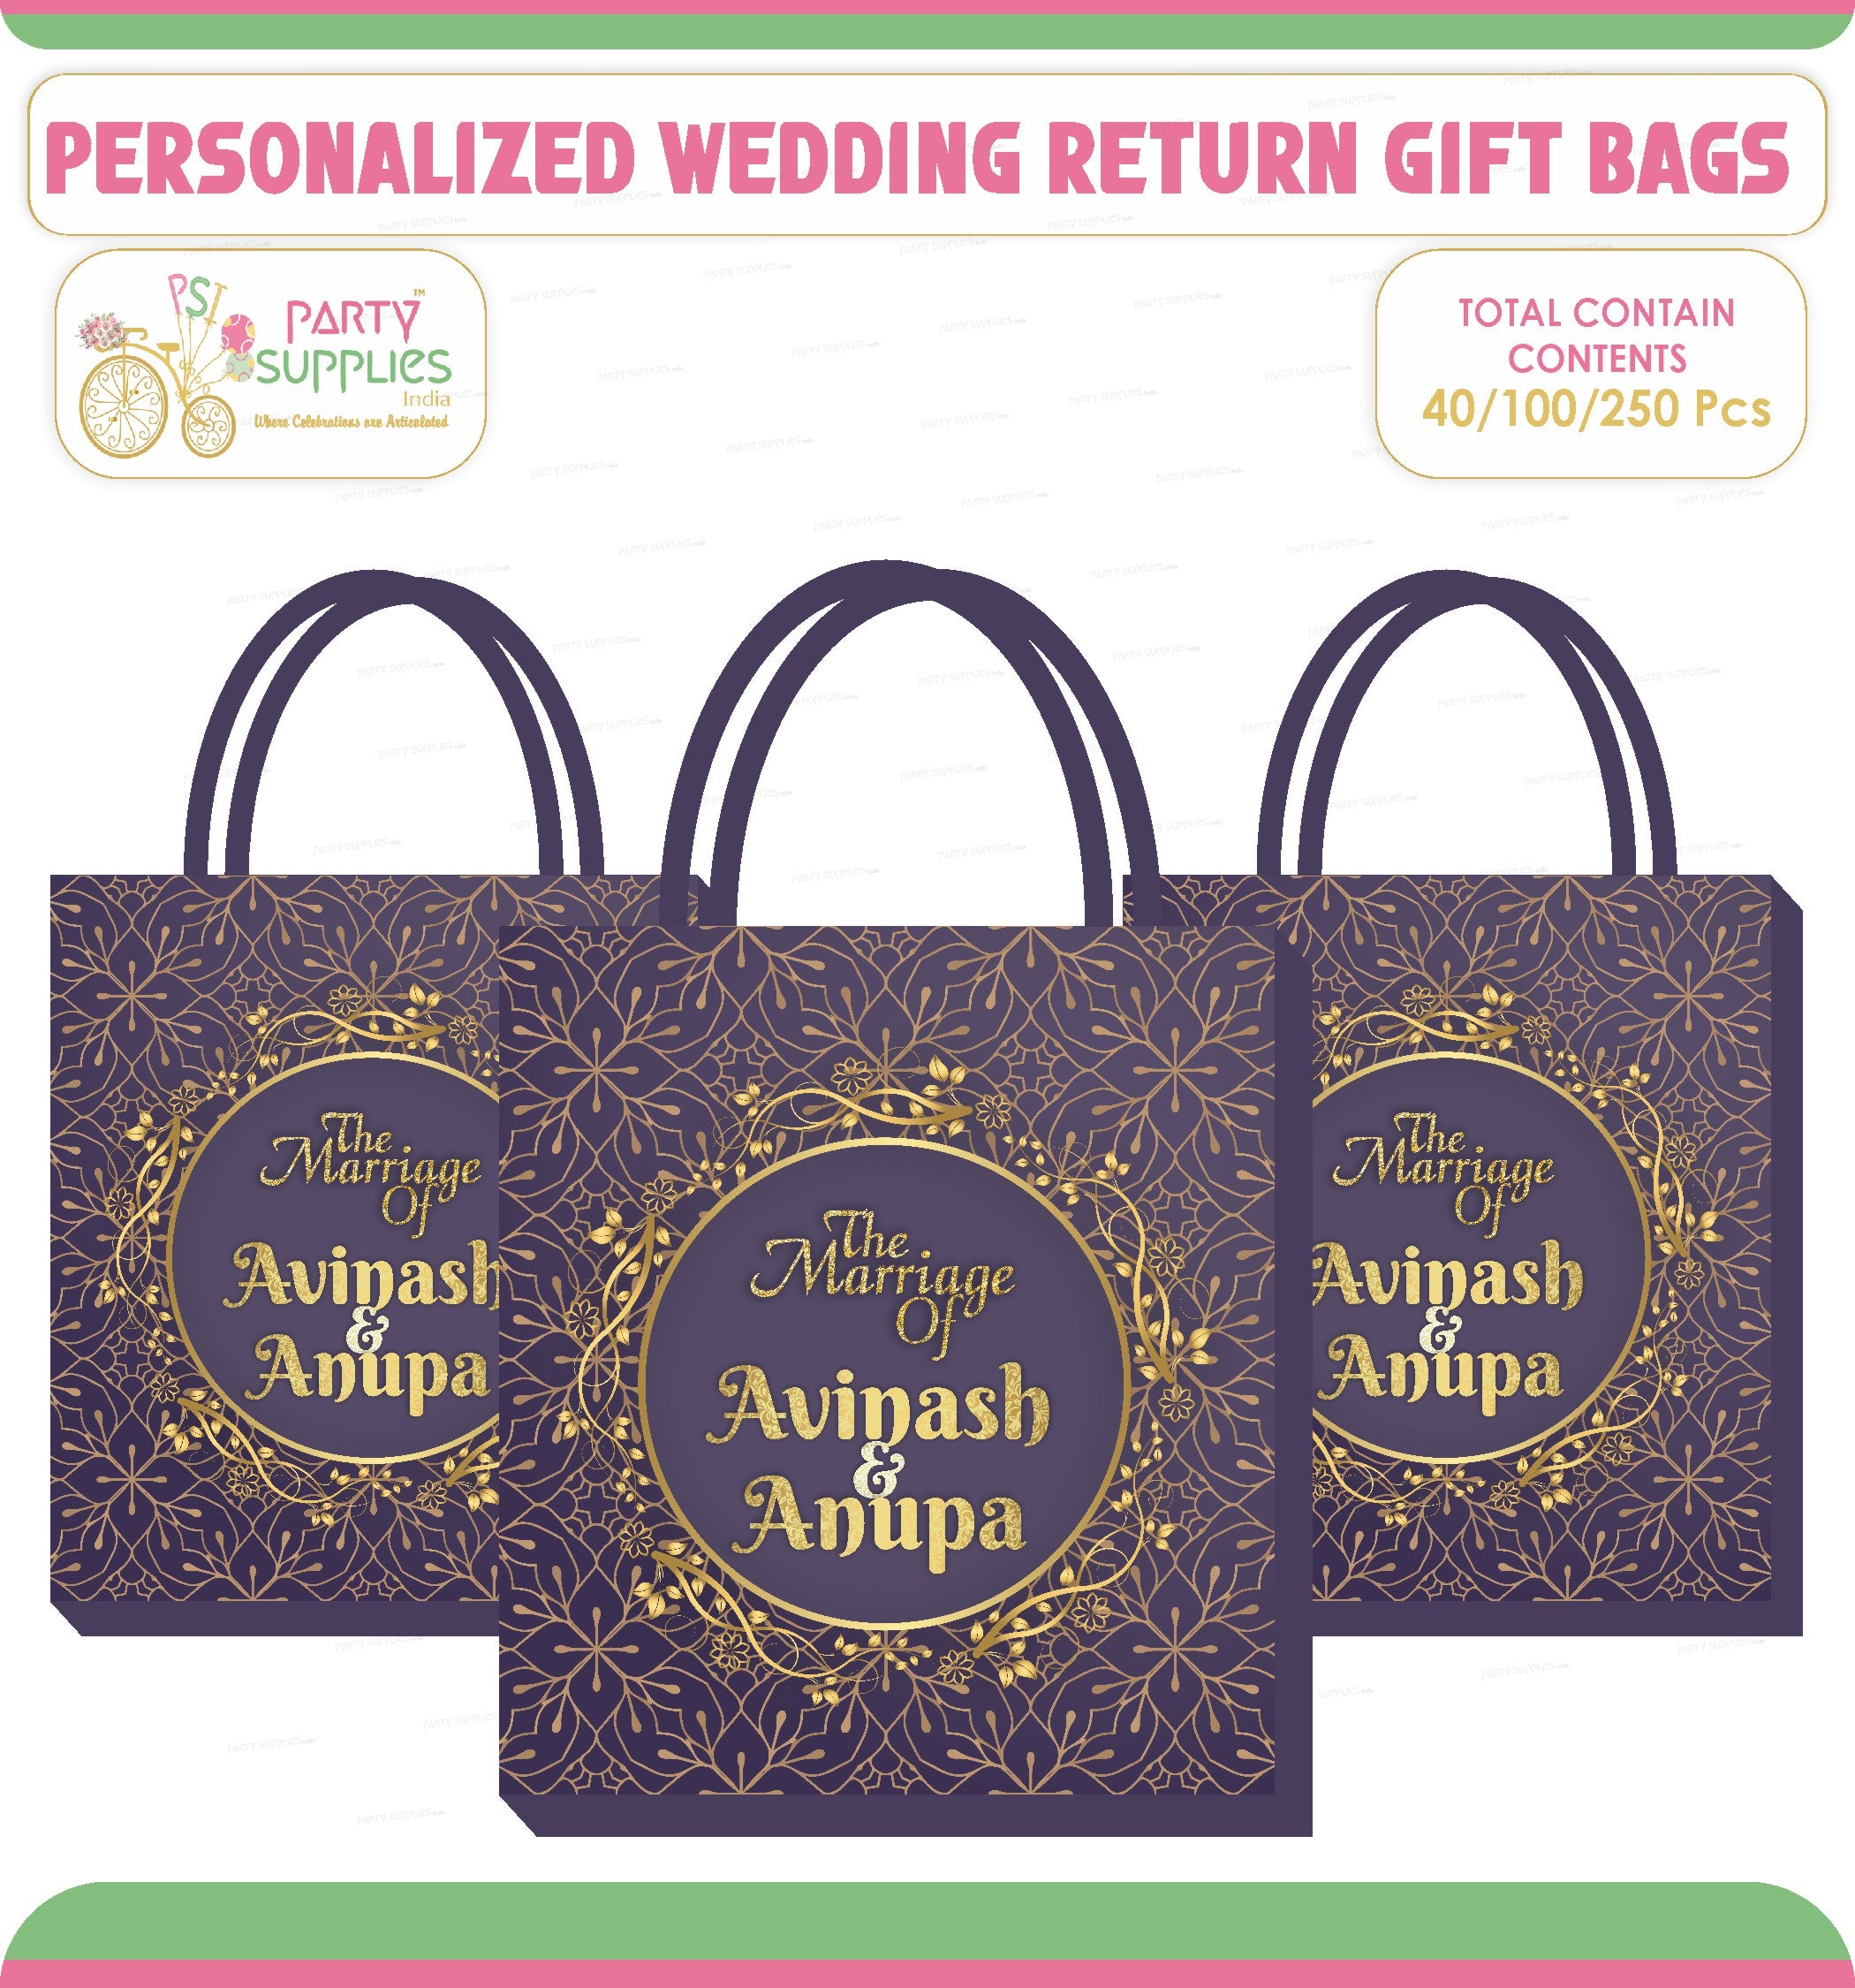 Wedding Return Gift Ideas For Shagun : u/Wed_amor